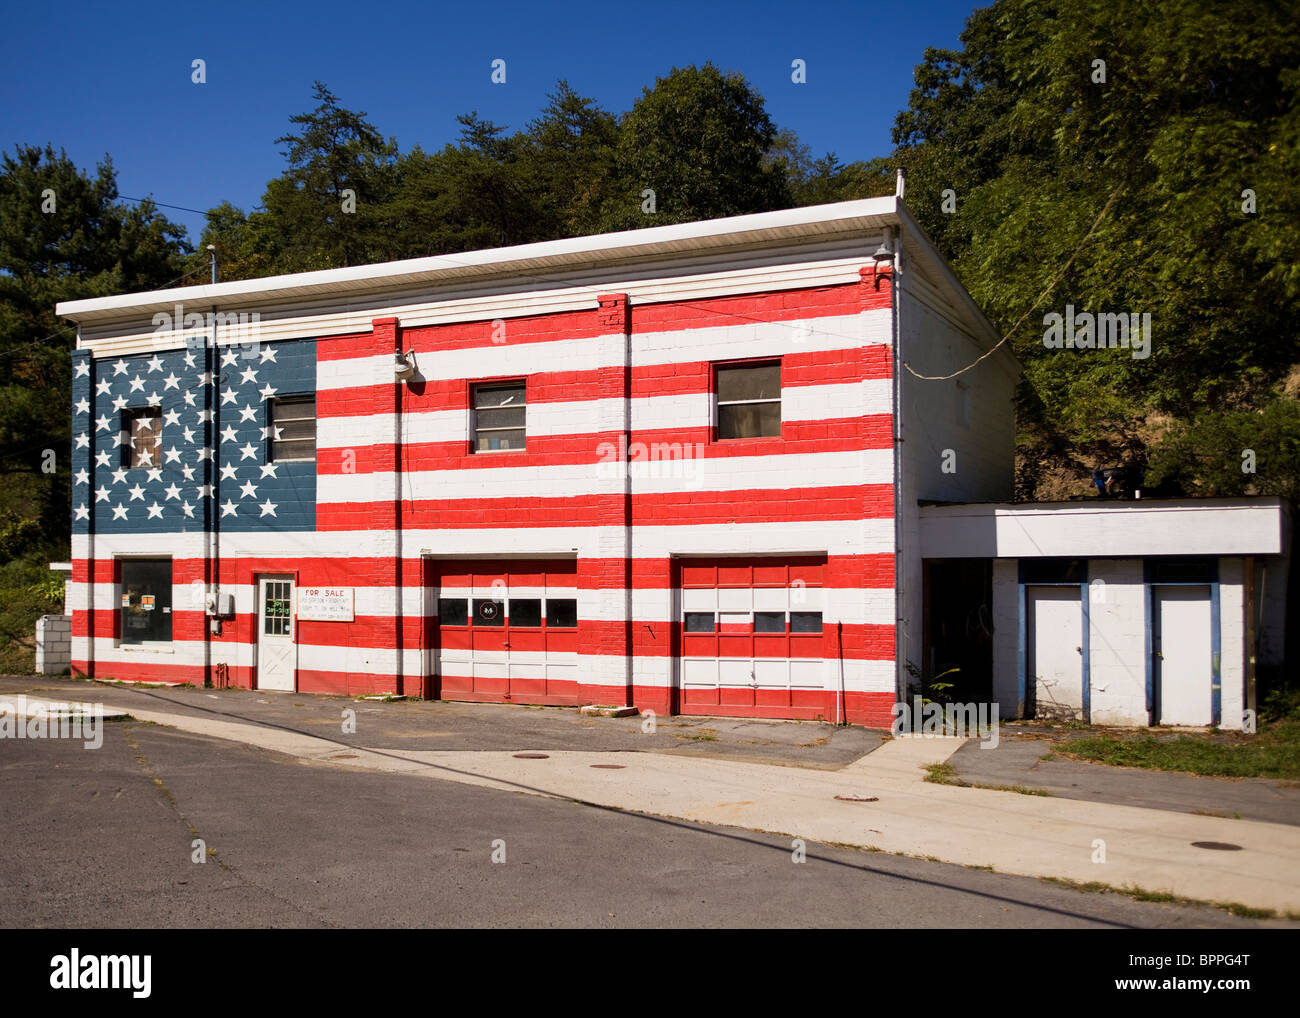 Drapeau américain peint sur l'avant du bâtiment ancien - Virginie-Occidentale, États-Unis Banque D'Images